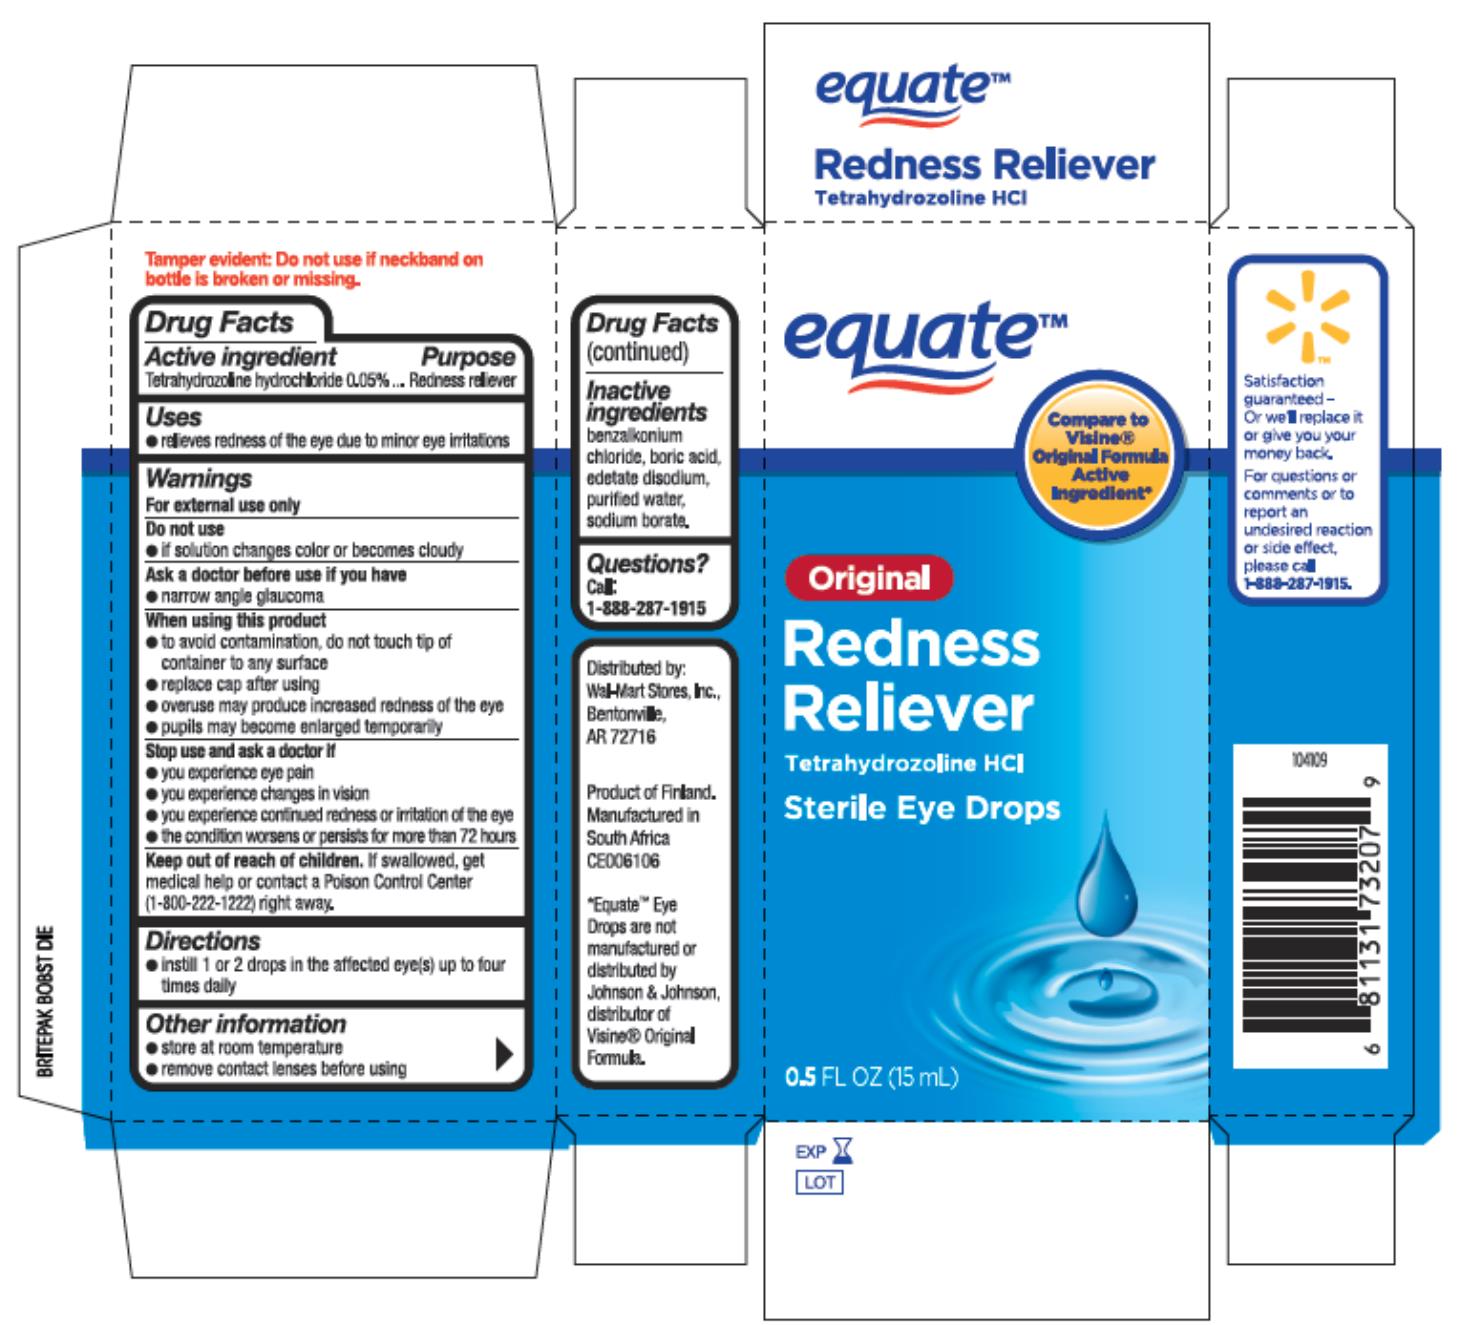 Equate®
Original Redness
Reliever
Tetrahydrozoline HCI
Sterile Eye Drops
0.5 FL OZ (15 mL)
